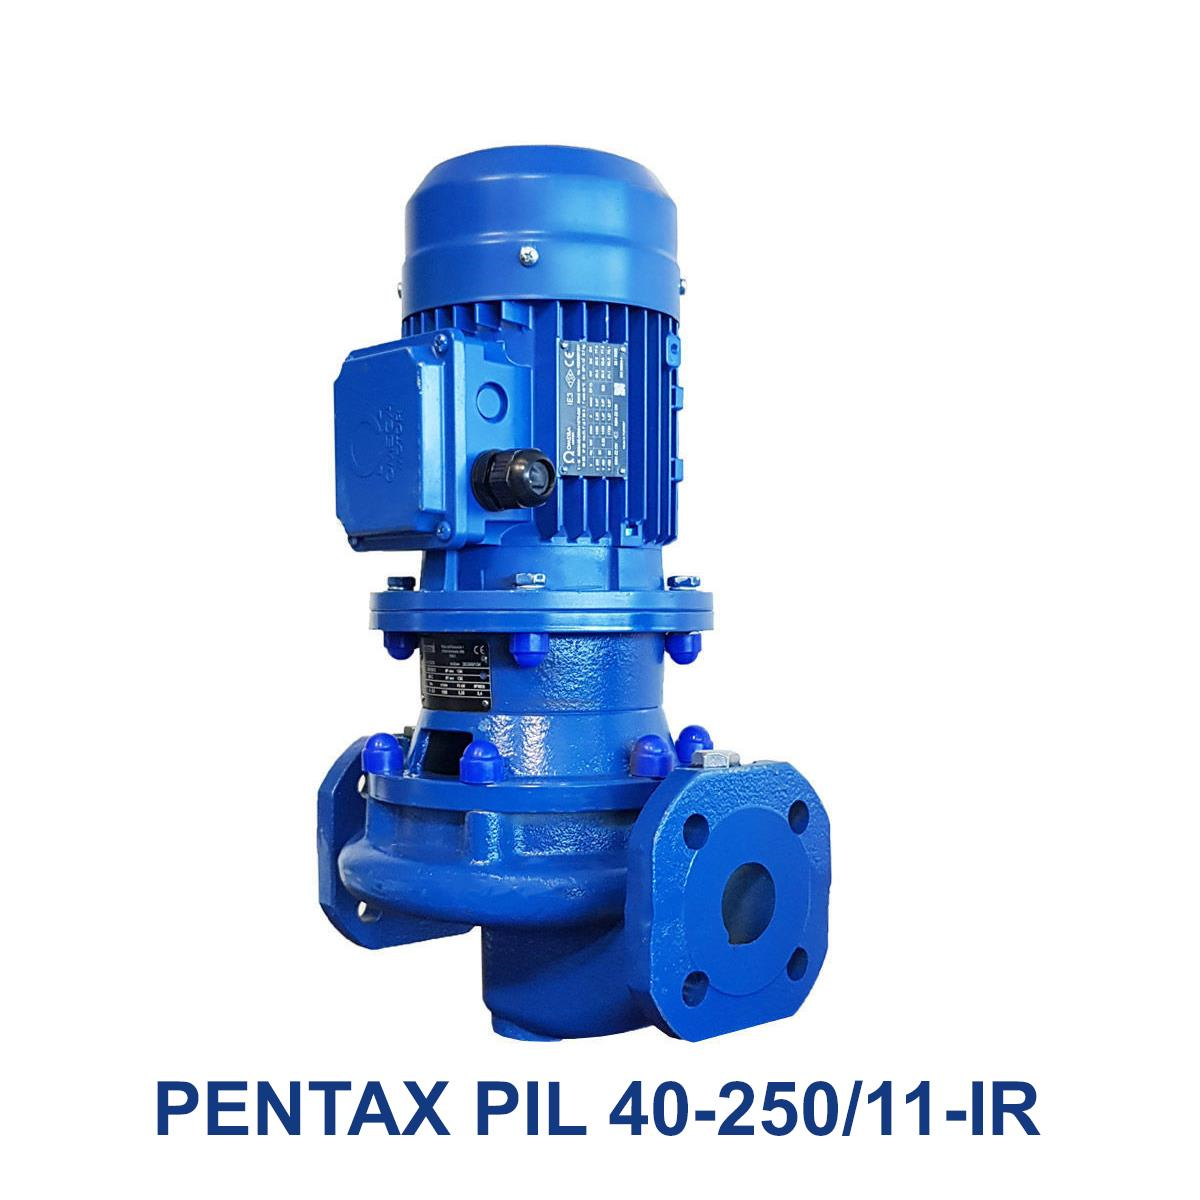 PENTAX-PIL-40-250-11-IR